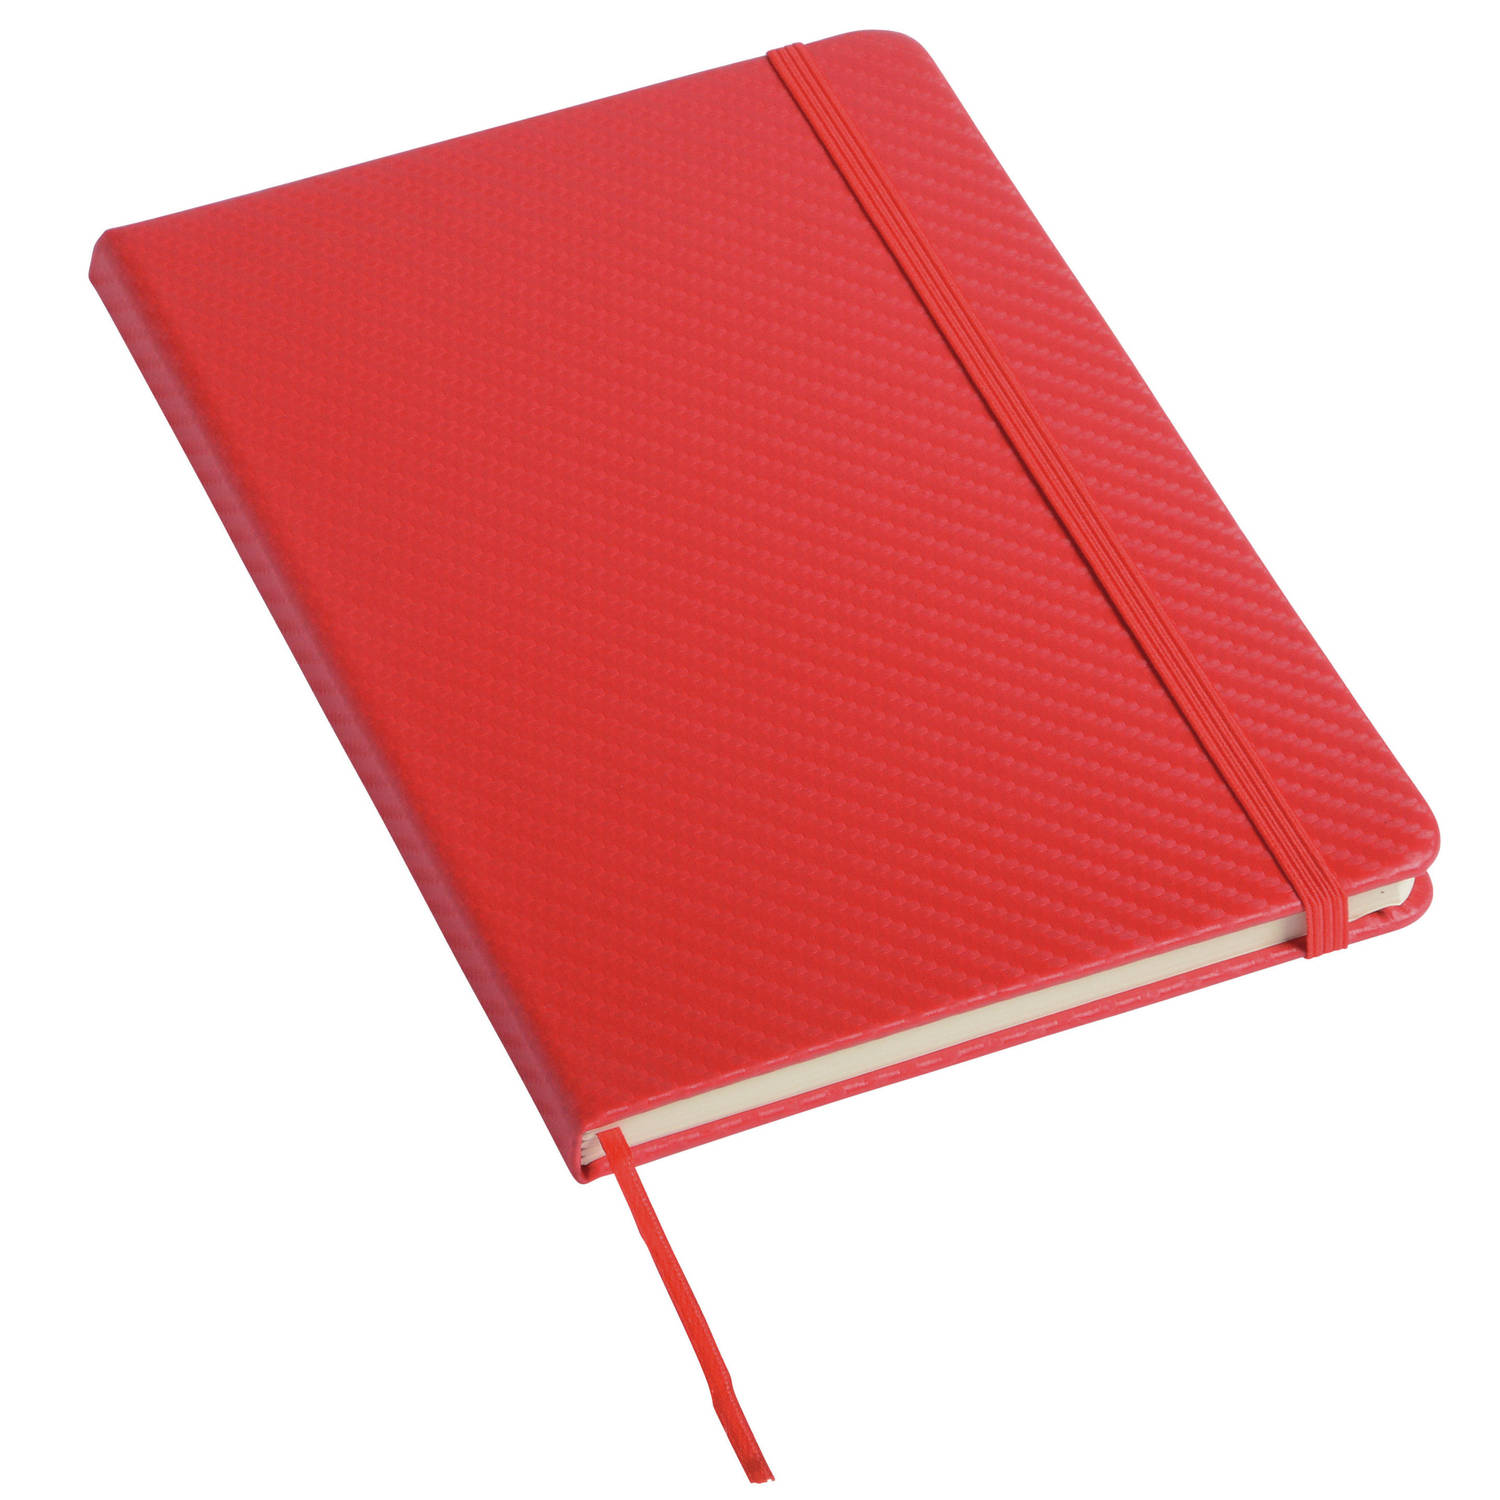 Pakket van 1x stuks schoolschriften-notitieboeken A5 harde kaft gelinieerd rood Notitieboek